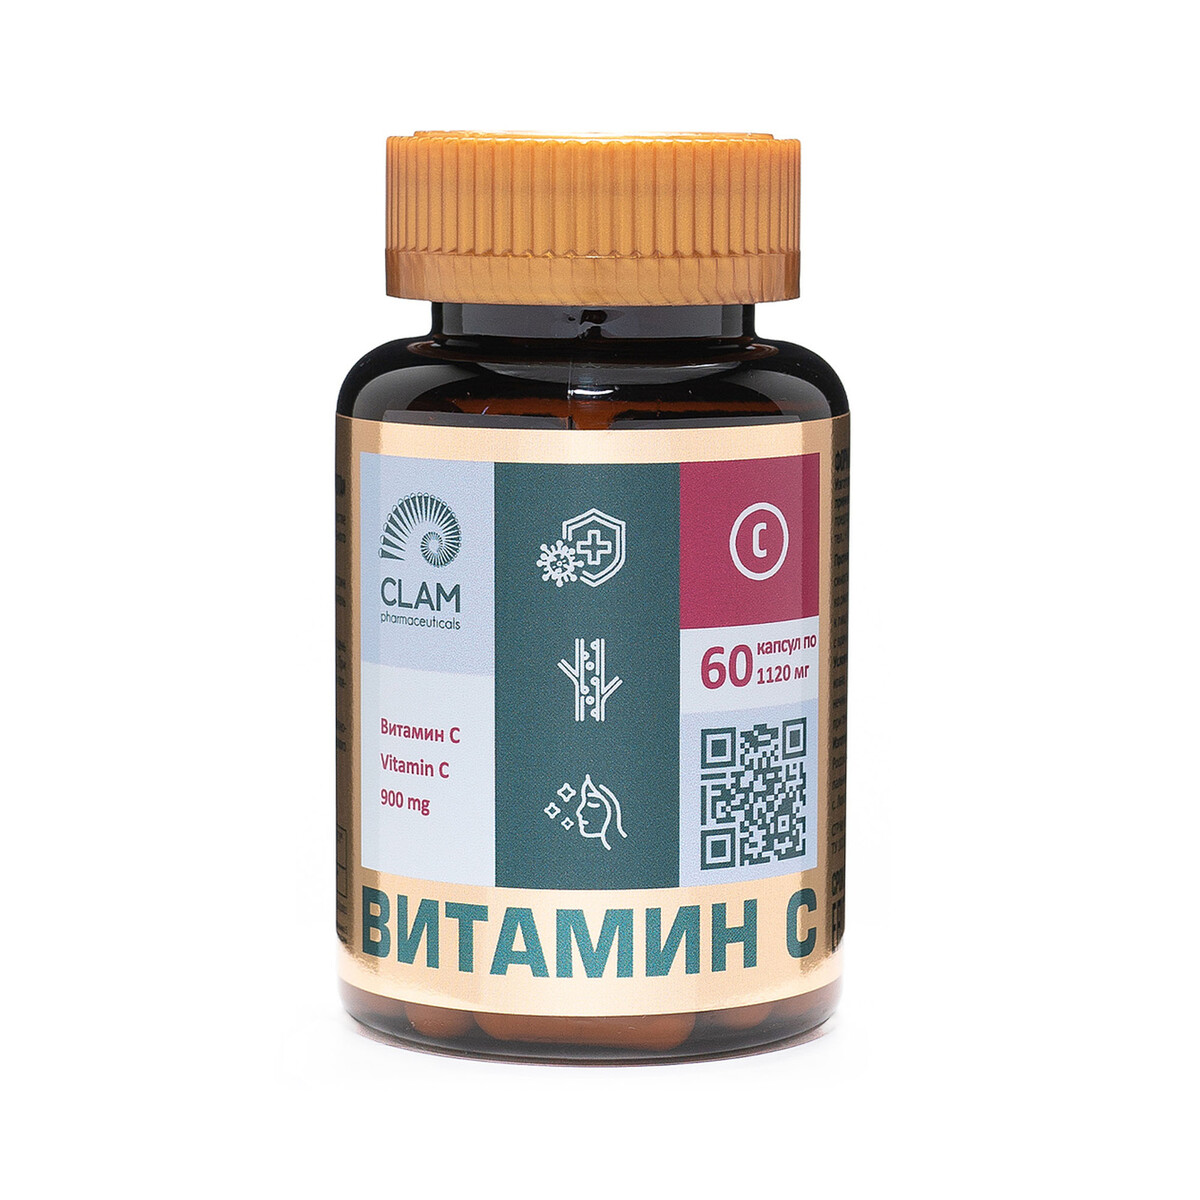 Витамин С - ANTI AGE, источник витаминов и минералов - для иммунитета и укрепления стенок сосудов - 60 капсул